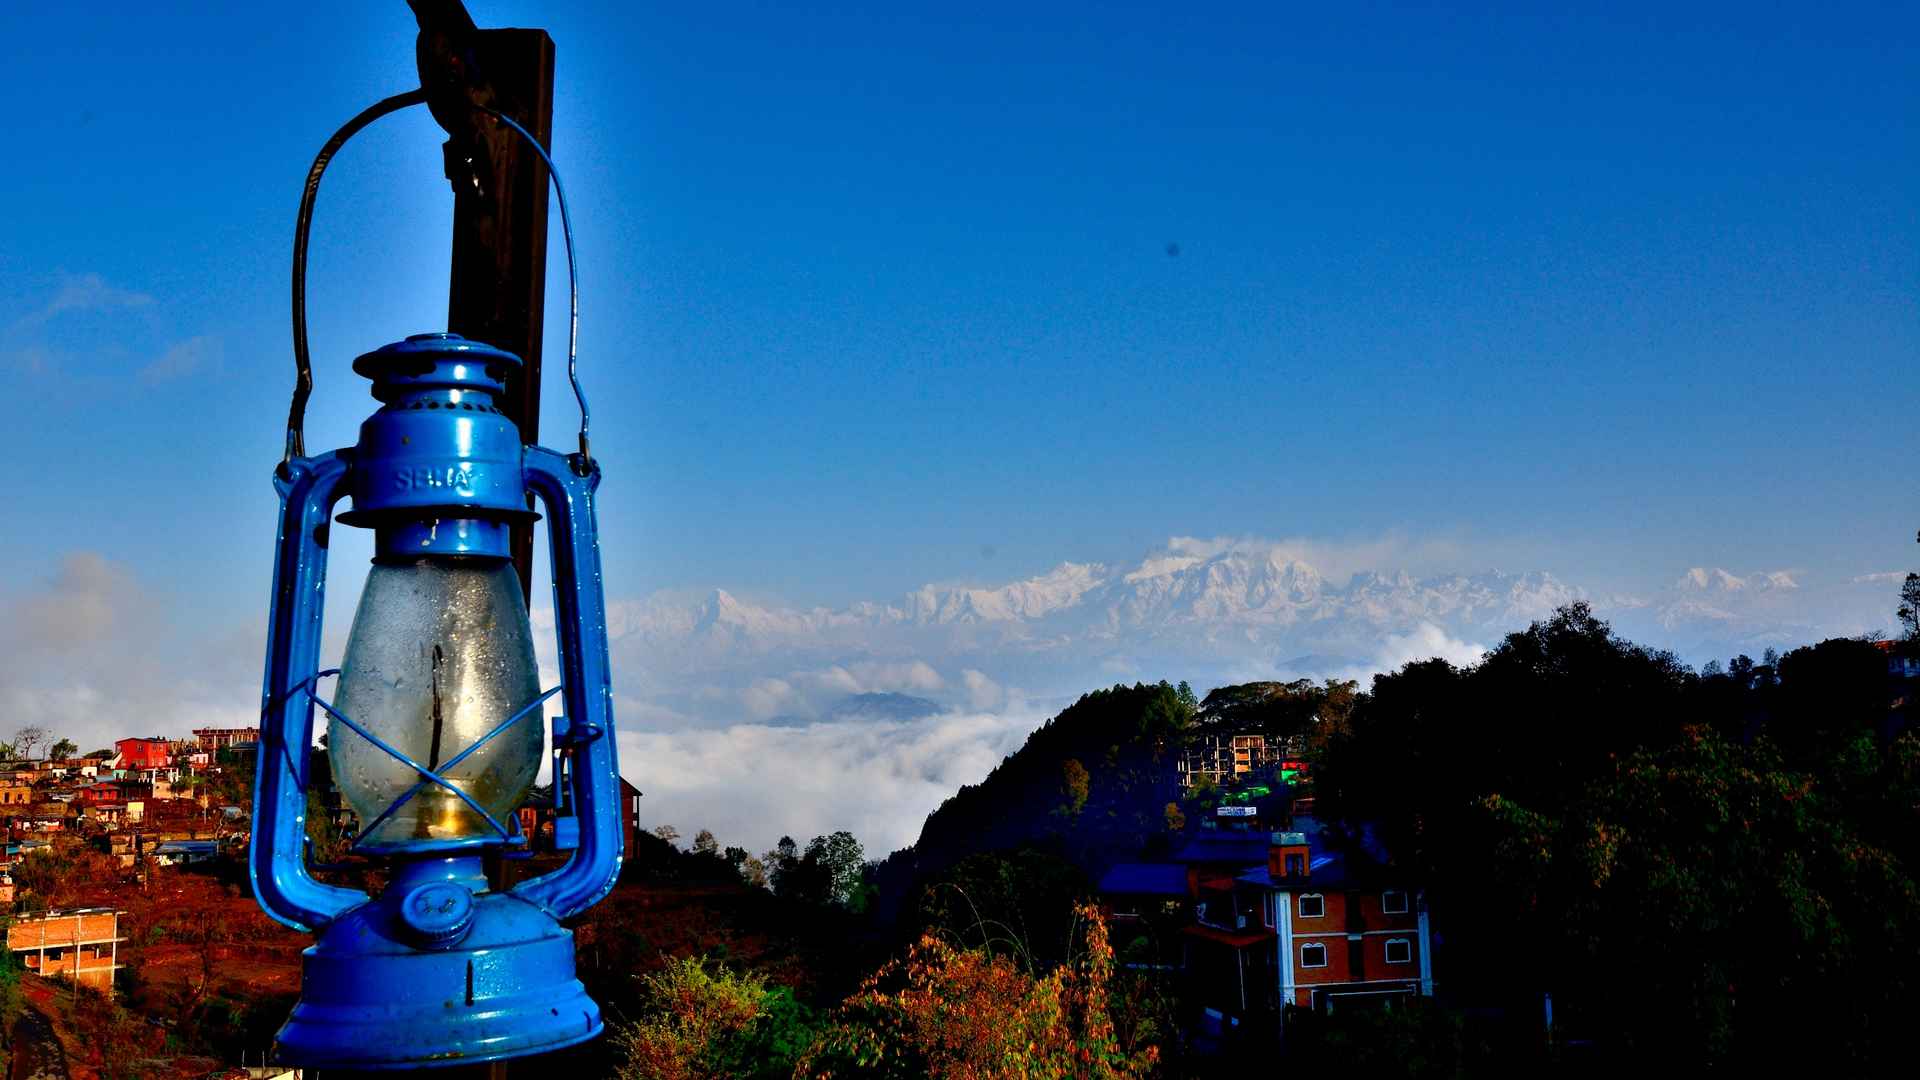 尼泊尔蓝色系风景壁纸图片-